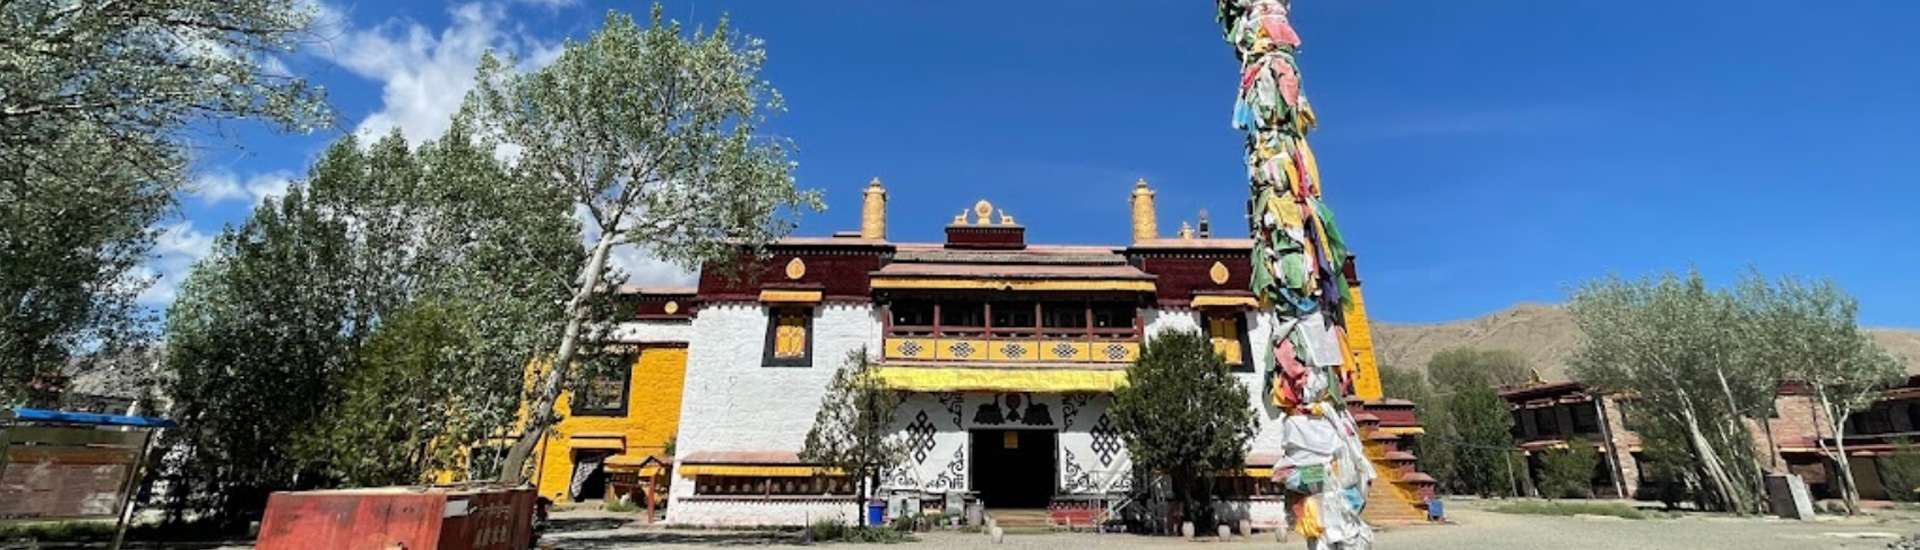 Dratang Monastery